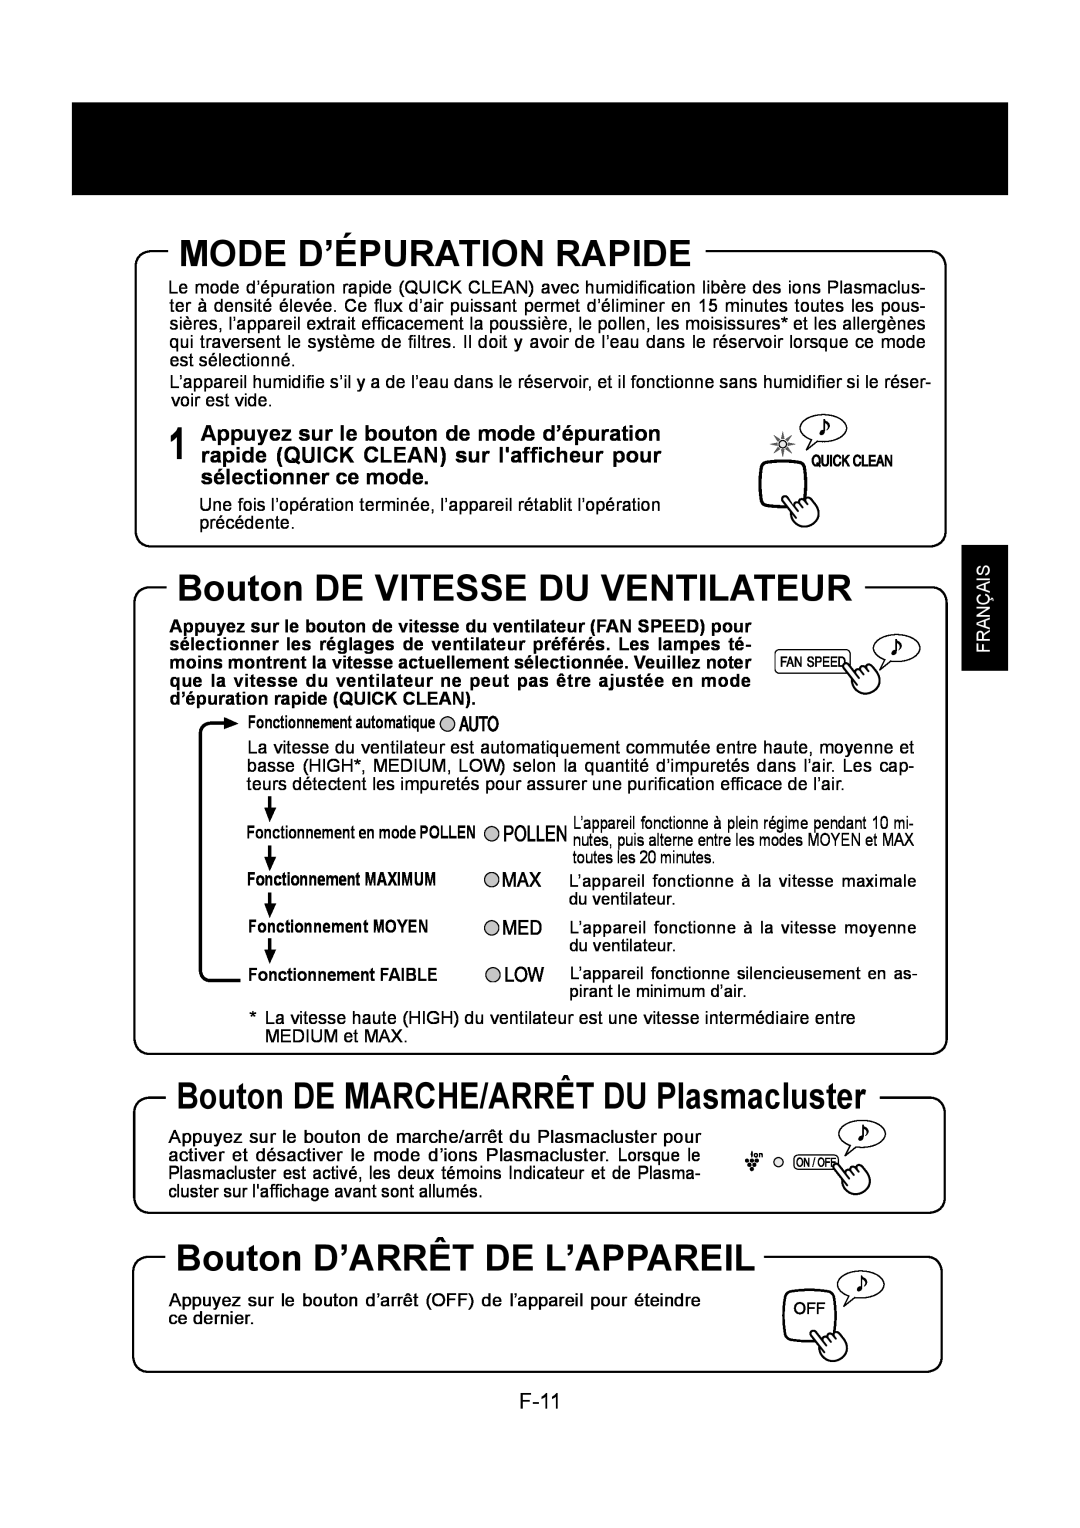 Sharp KC-860U Mode D’Épuration Rapide, Bouton DE VITESSE DU VENTILATEUR, Bouton D’ARRÊT DE L’APPAREIL, F-11, Français 